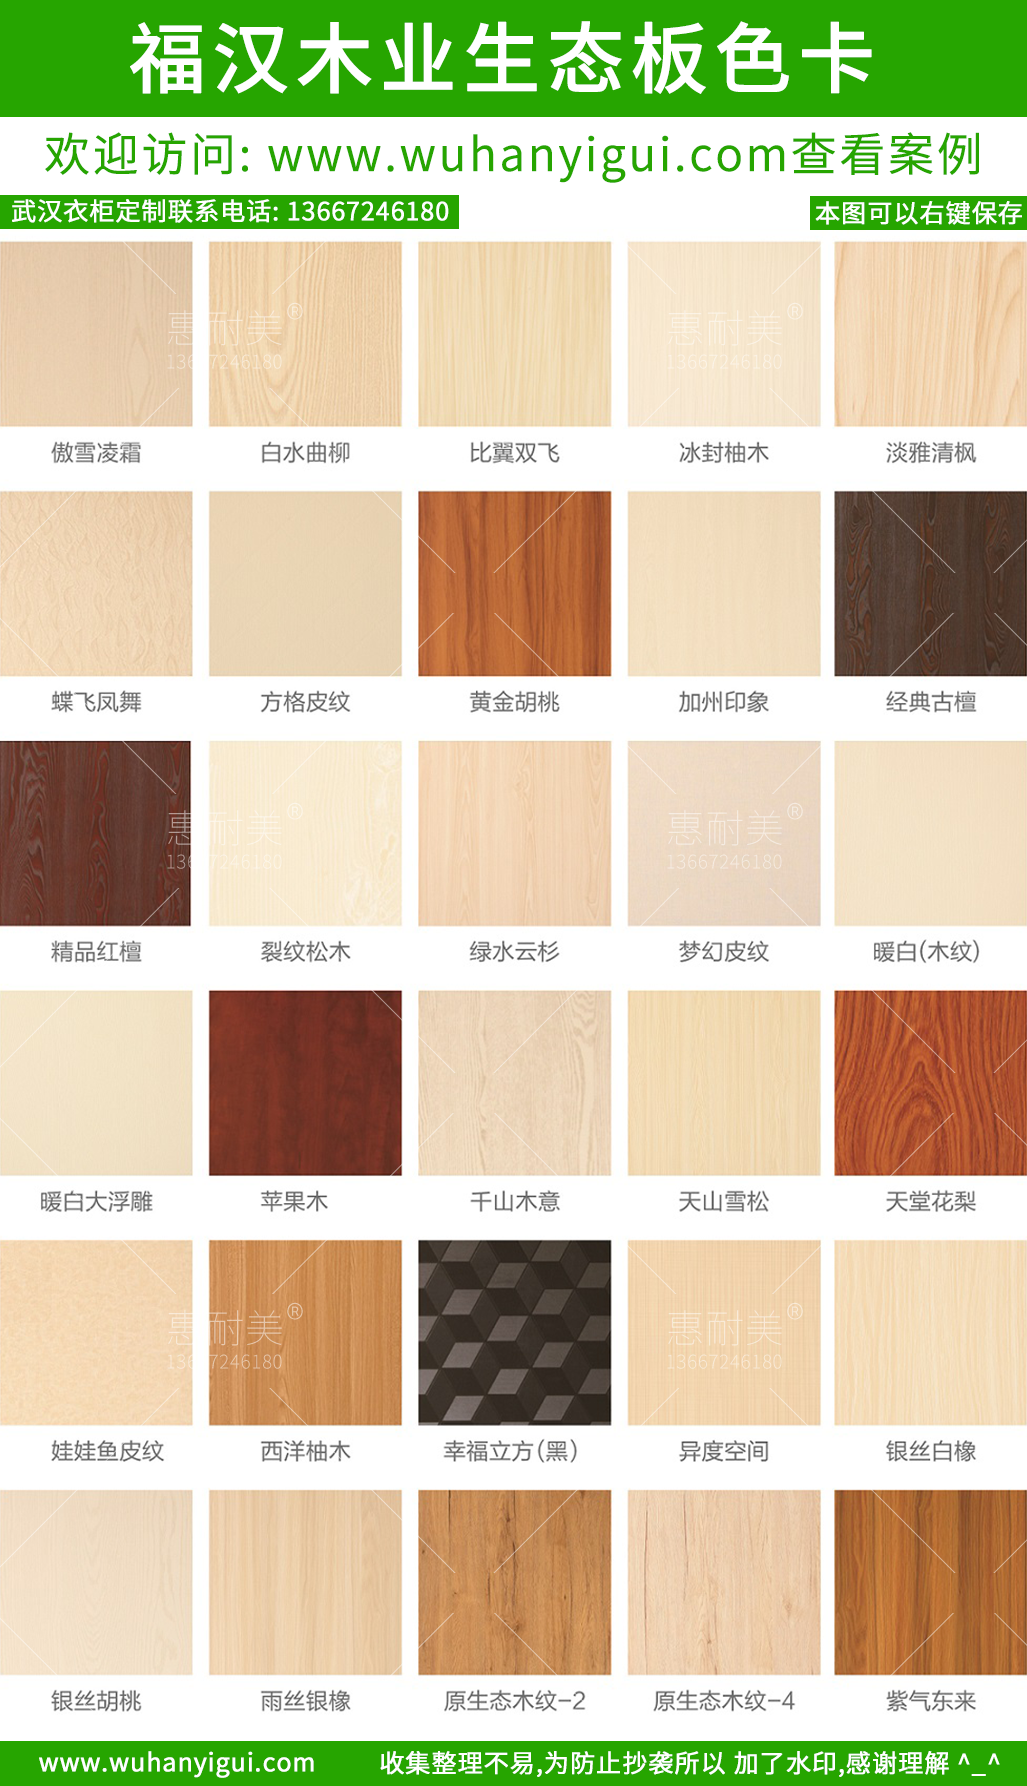 下面是武汉市惠耐美家具有限公司收集整理的,福汉生态板色卡